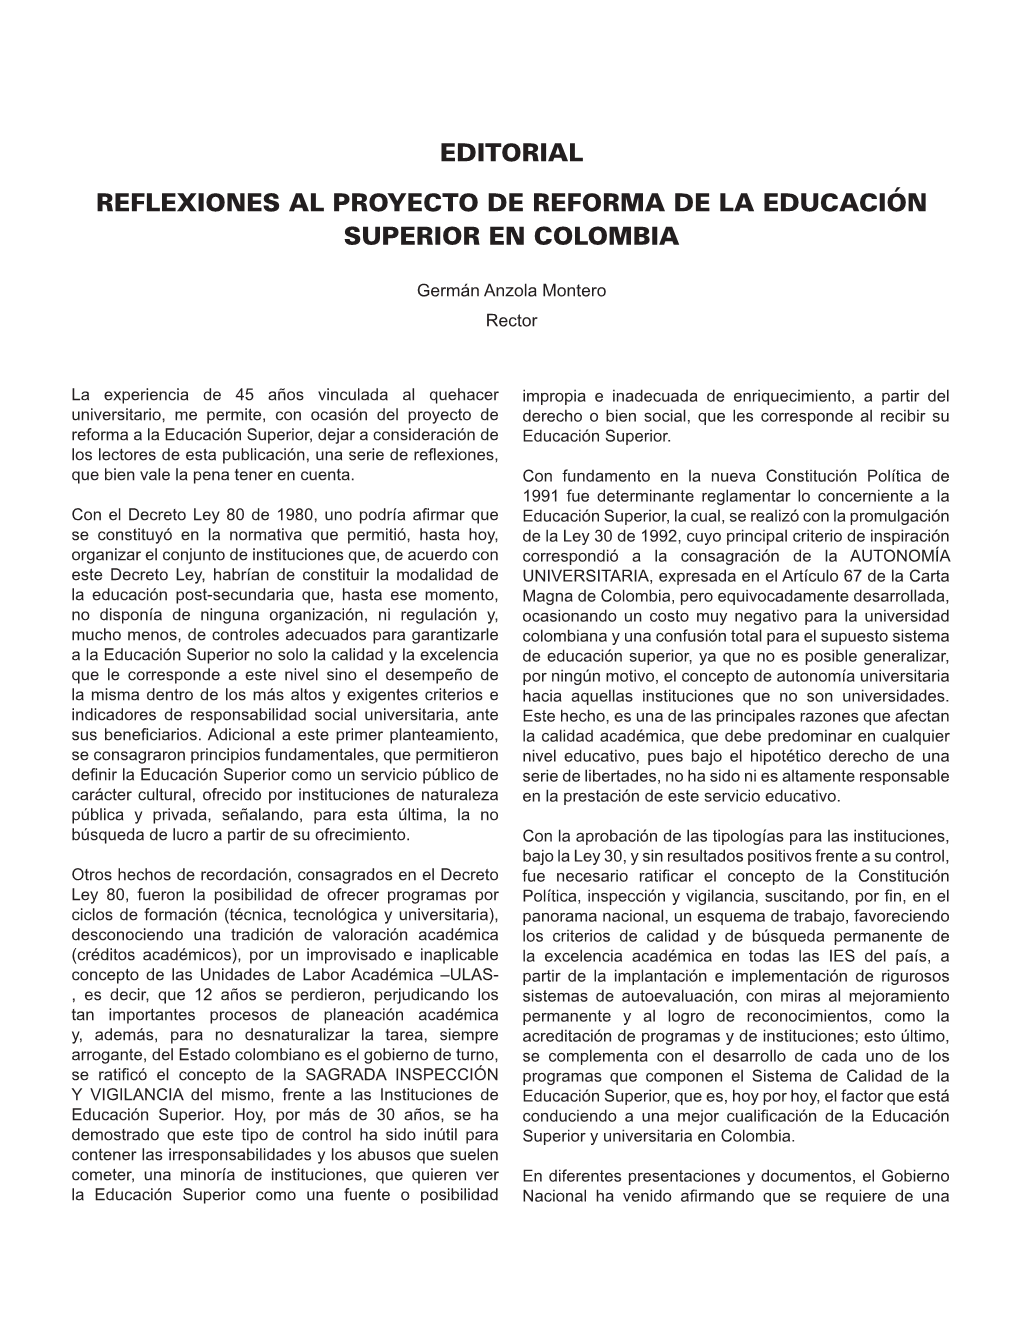 Editorial Reflexiones Al Proyecto De Reforma De La Educación Superior En Colombia